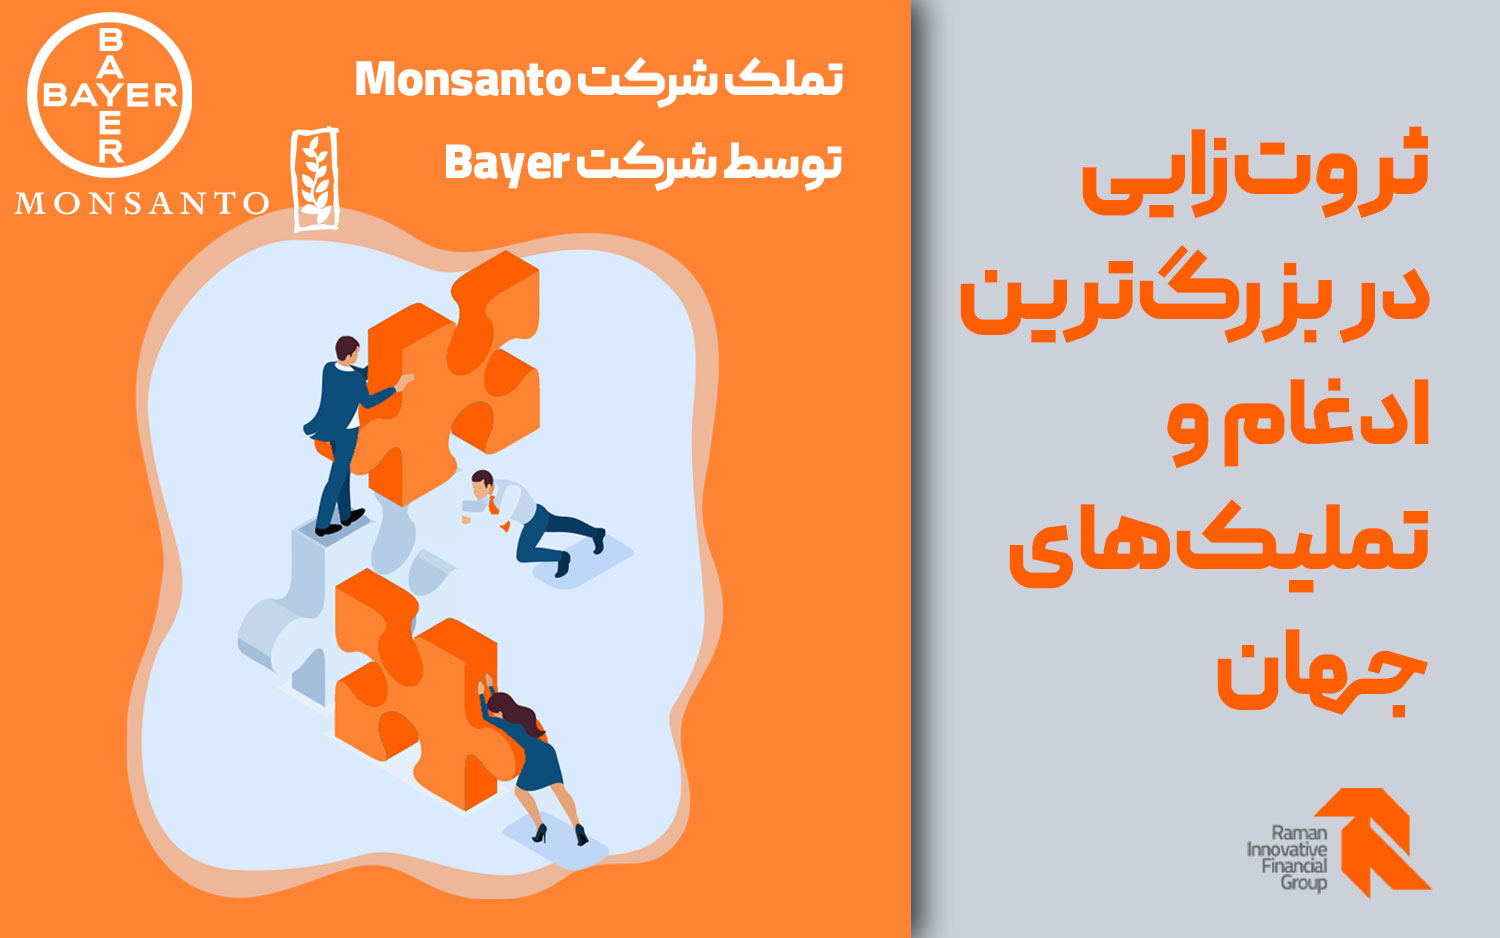 تملک شرکت Monsanto توسط شرکت Bayer